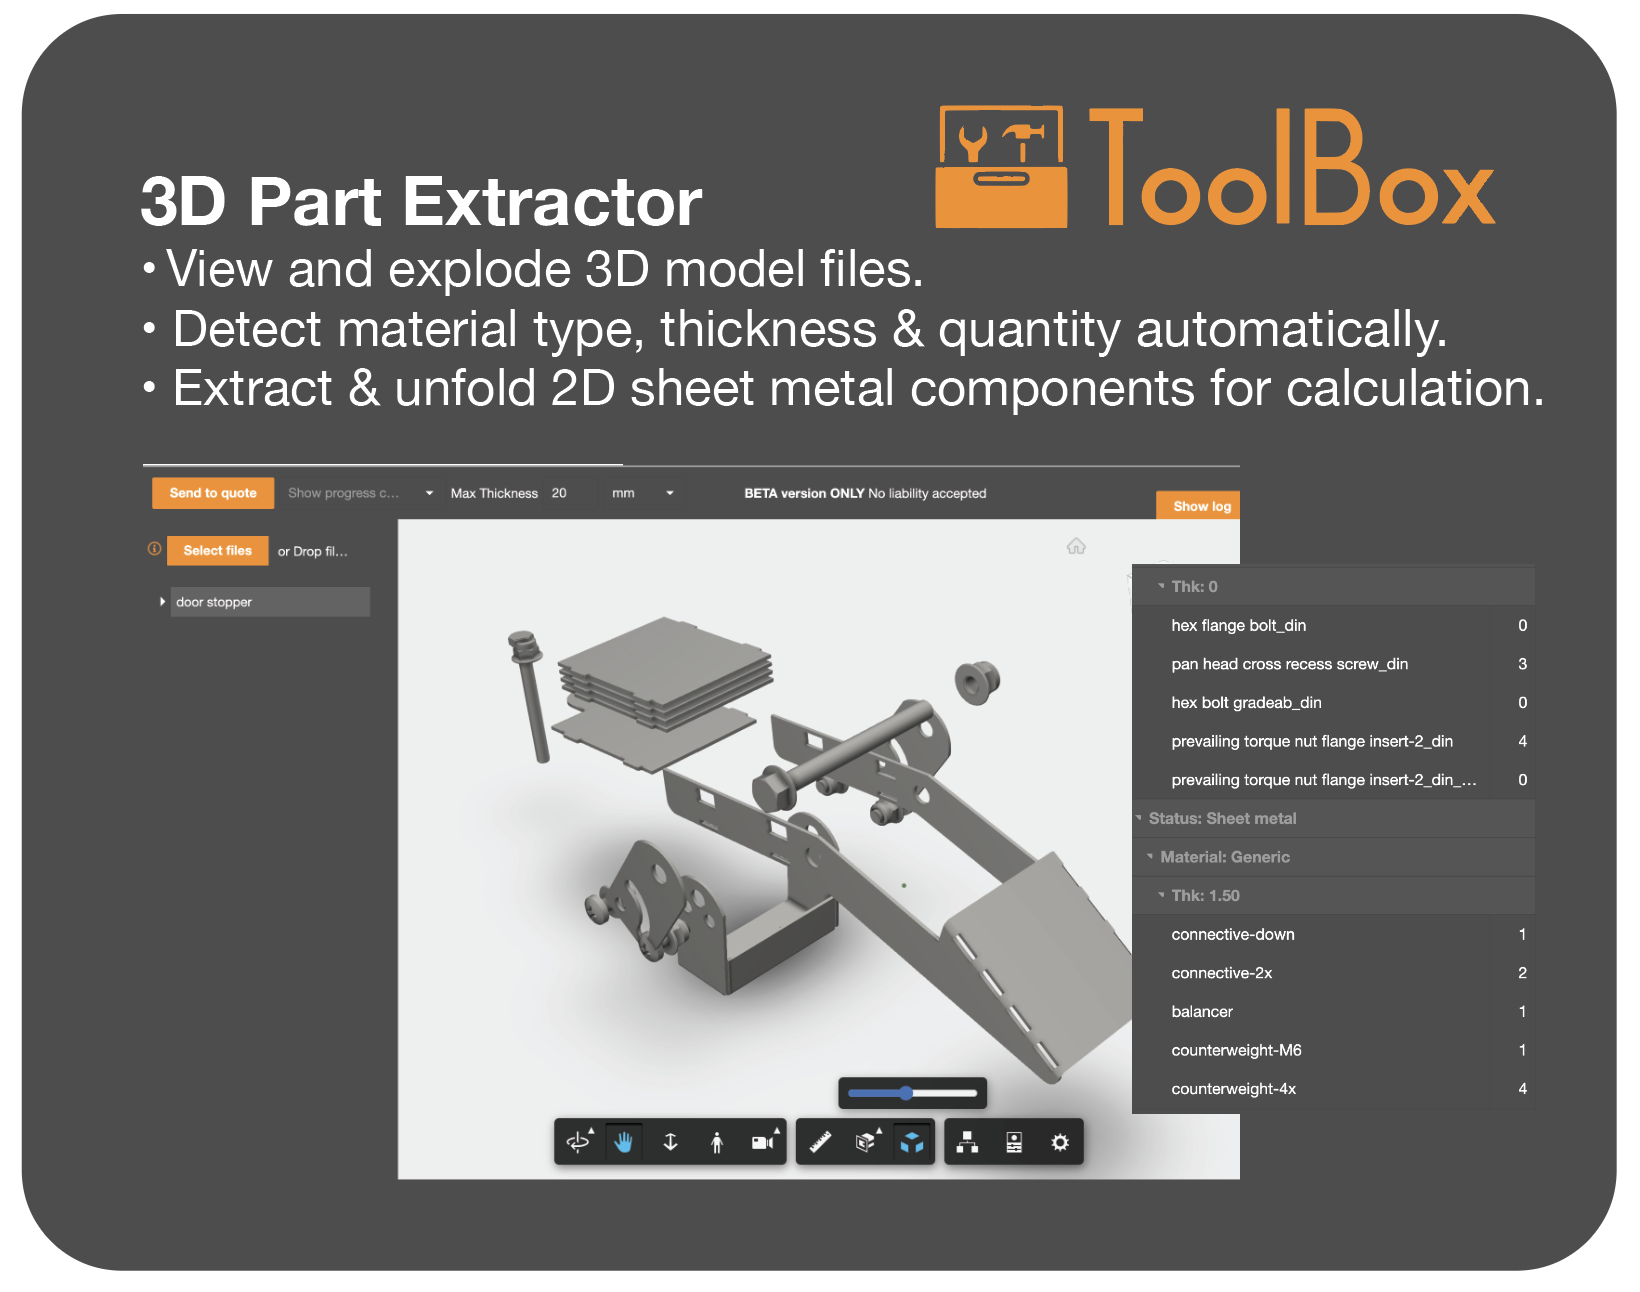 3D Part Extractor